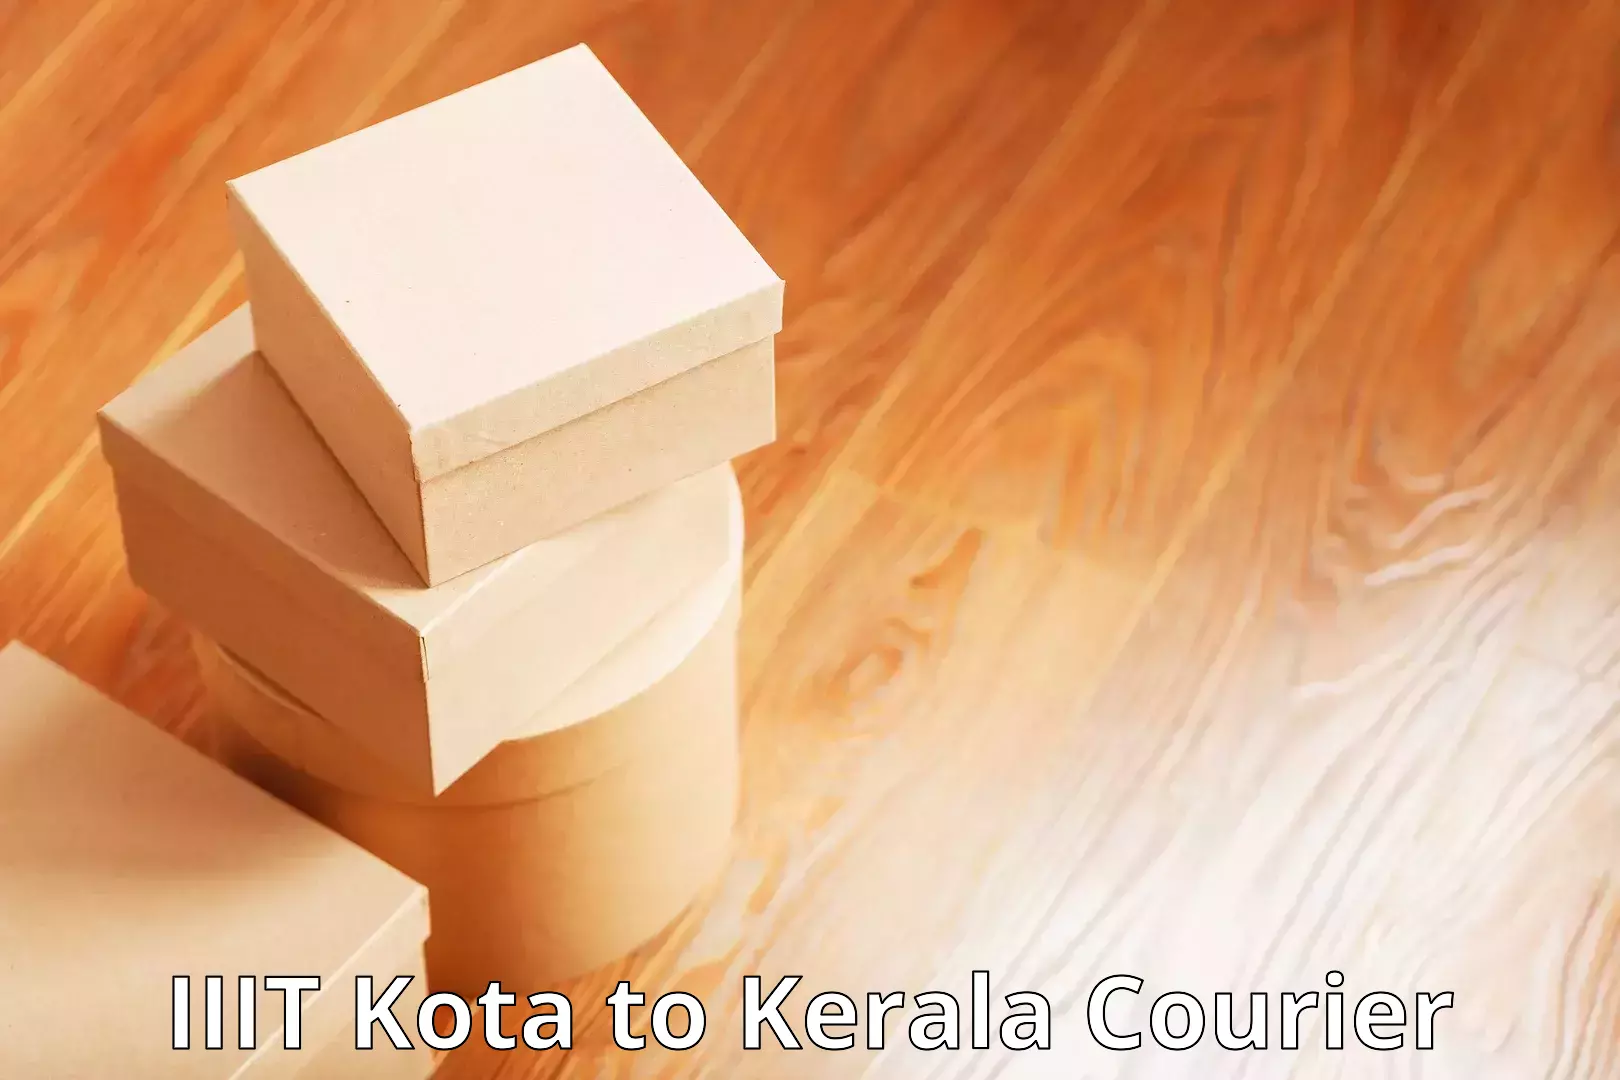 Cost-effective courier options in IIIT Kota to Parakkadavu